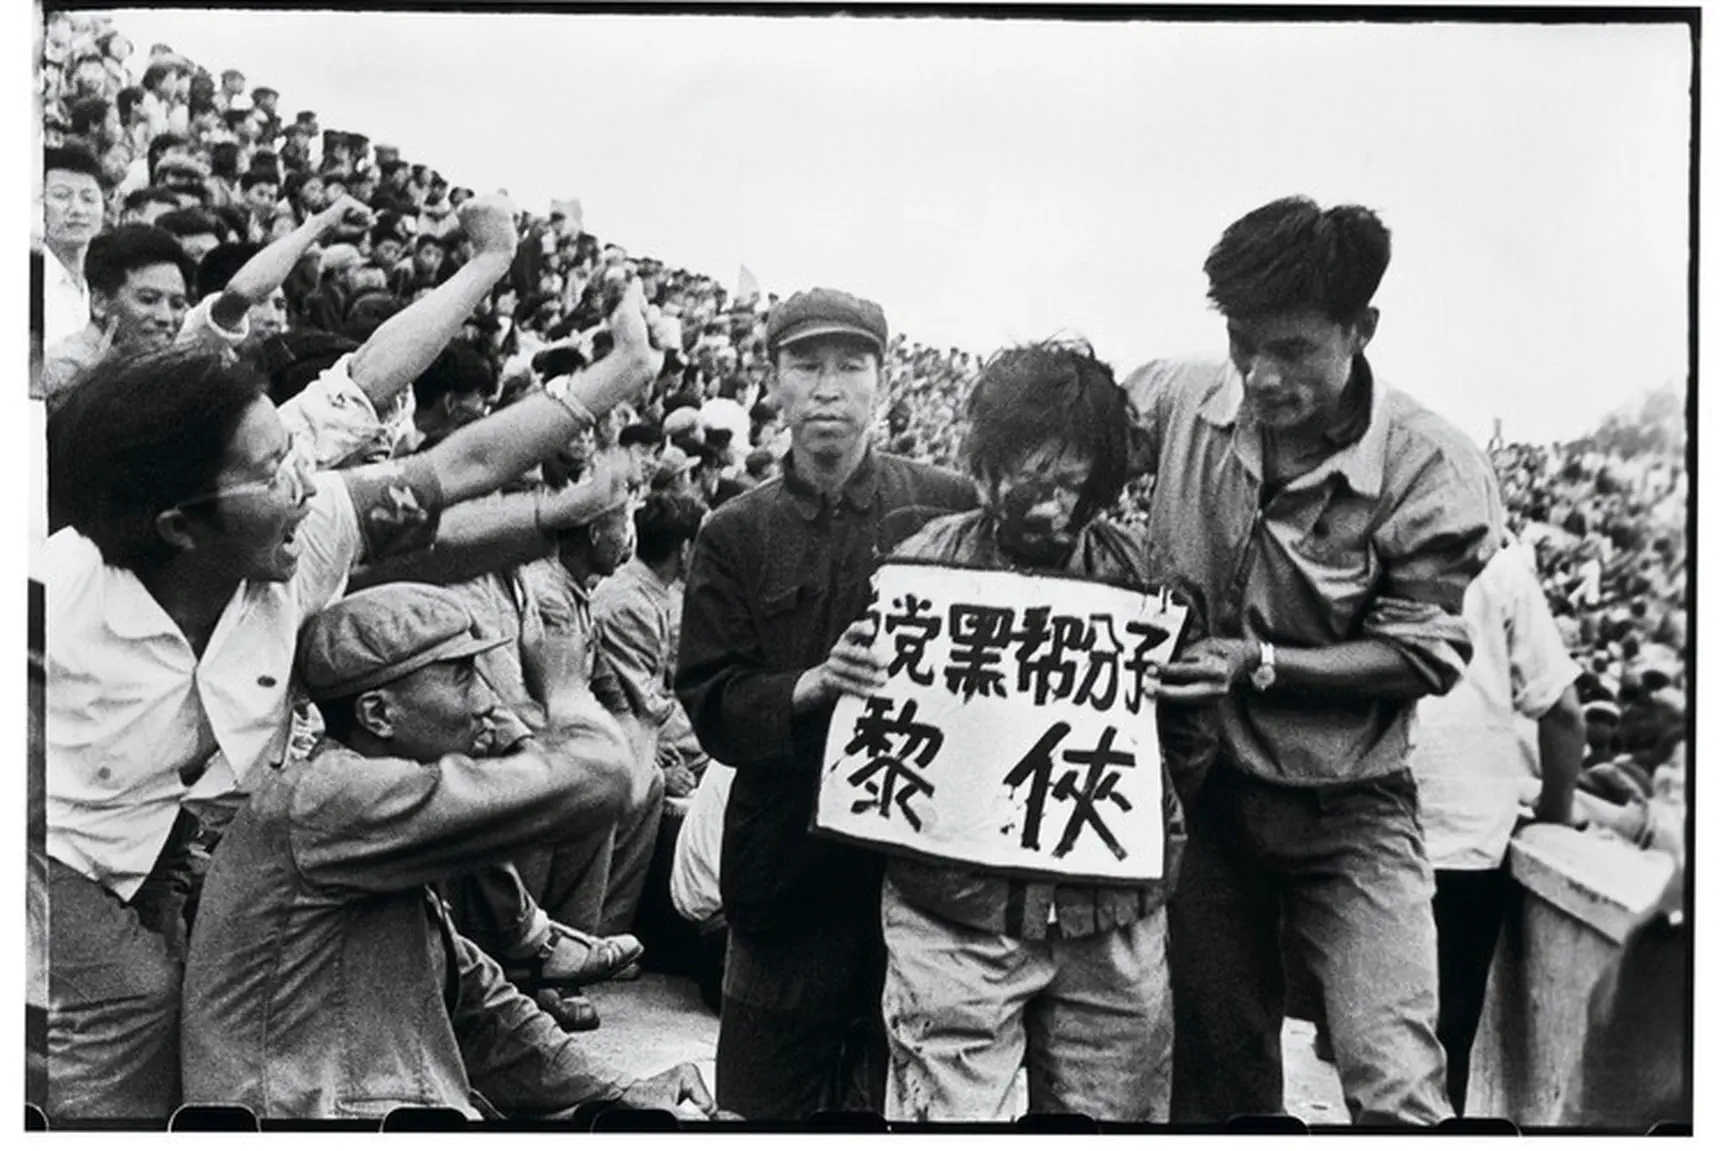 Een lokale secretaris van de communistische partij wordt veroordeeld door het publiek in een strijdsessie, Harbin, 29 augustus 1966.